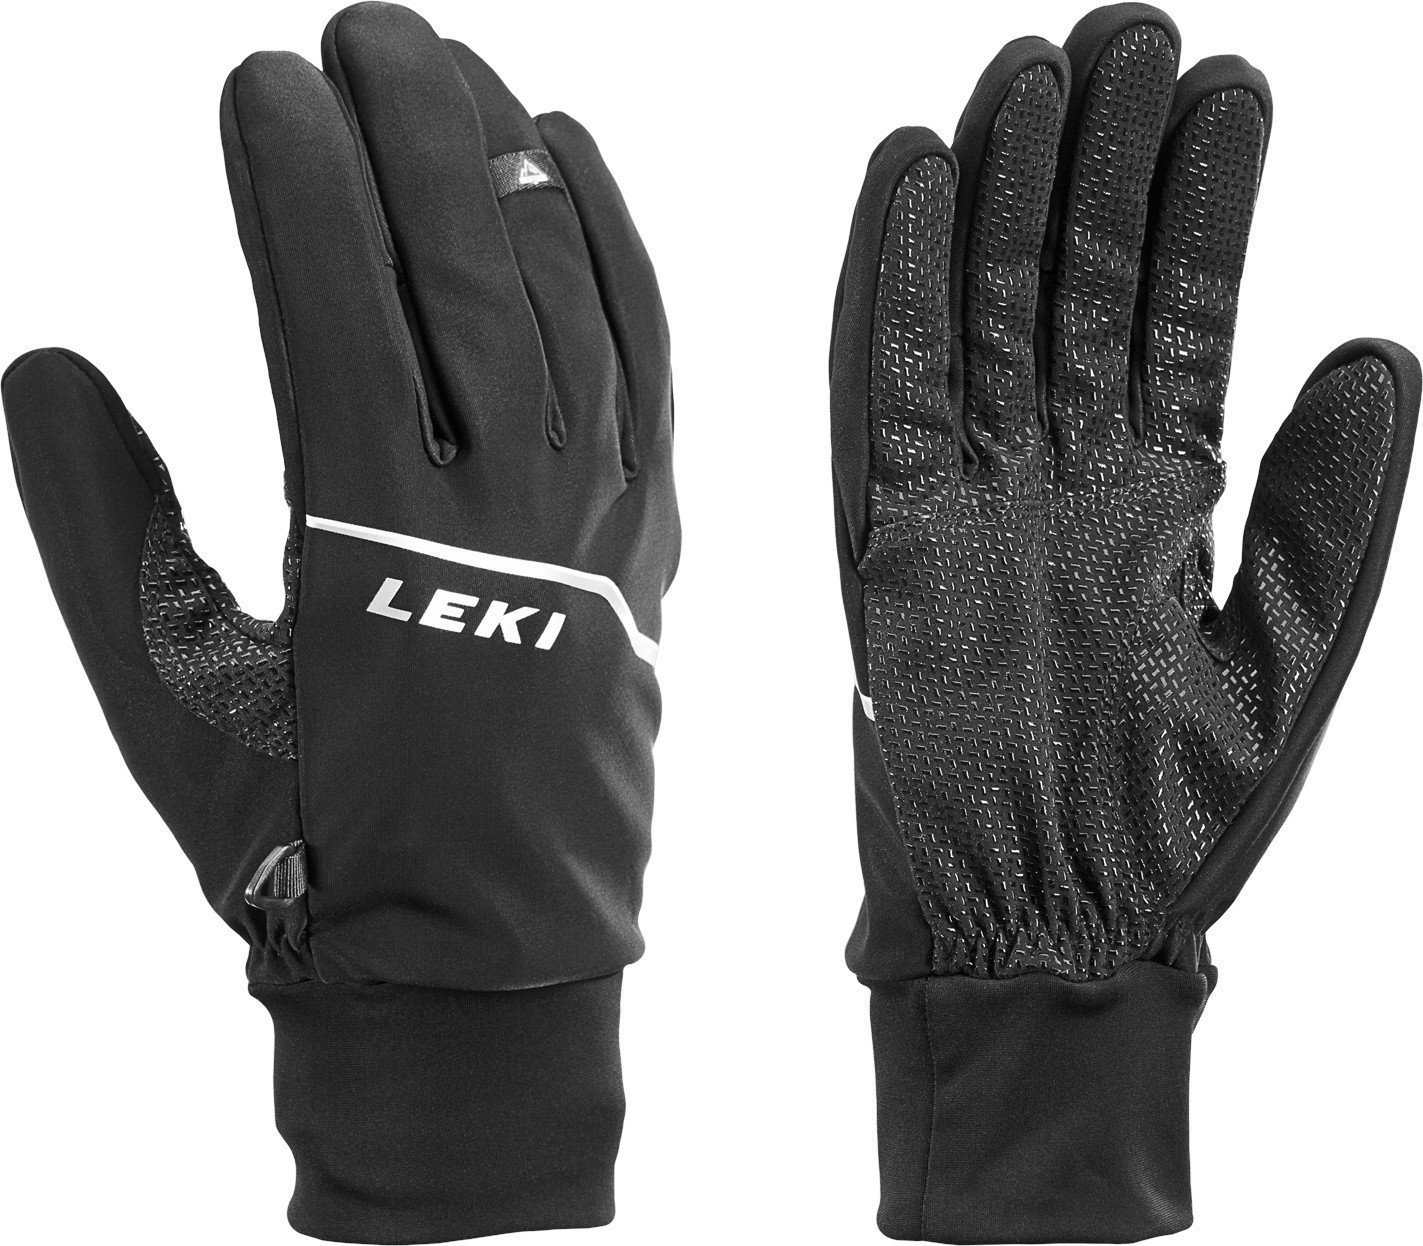 Handskar Leki Tour Lite Black/Chrome/White 8,5 Handskar